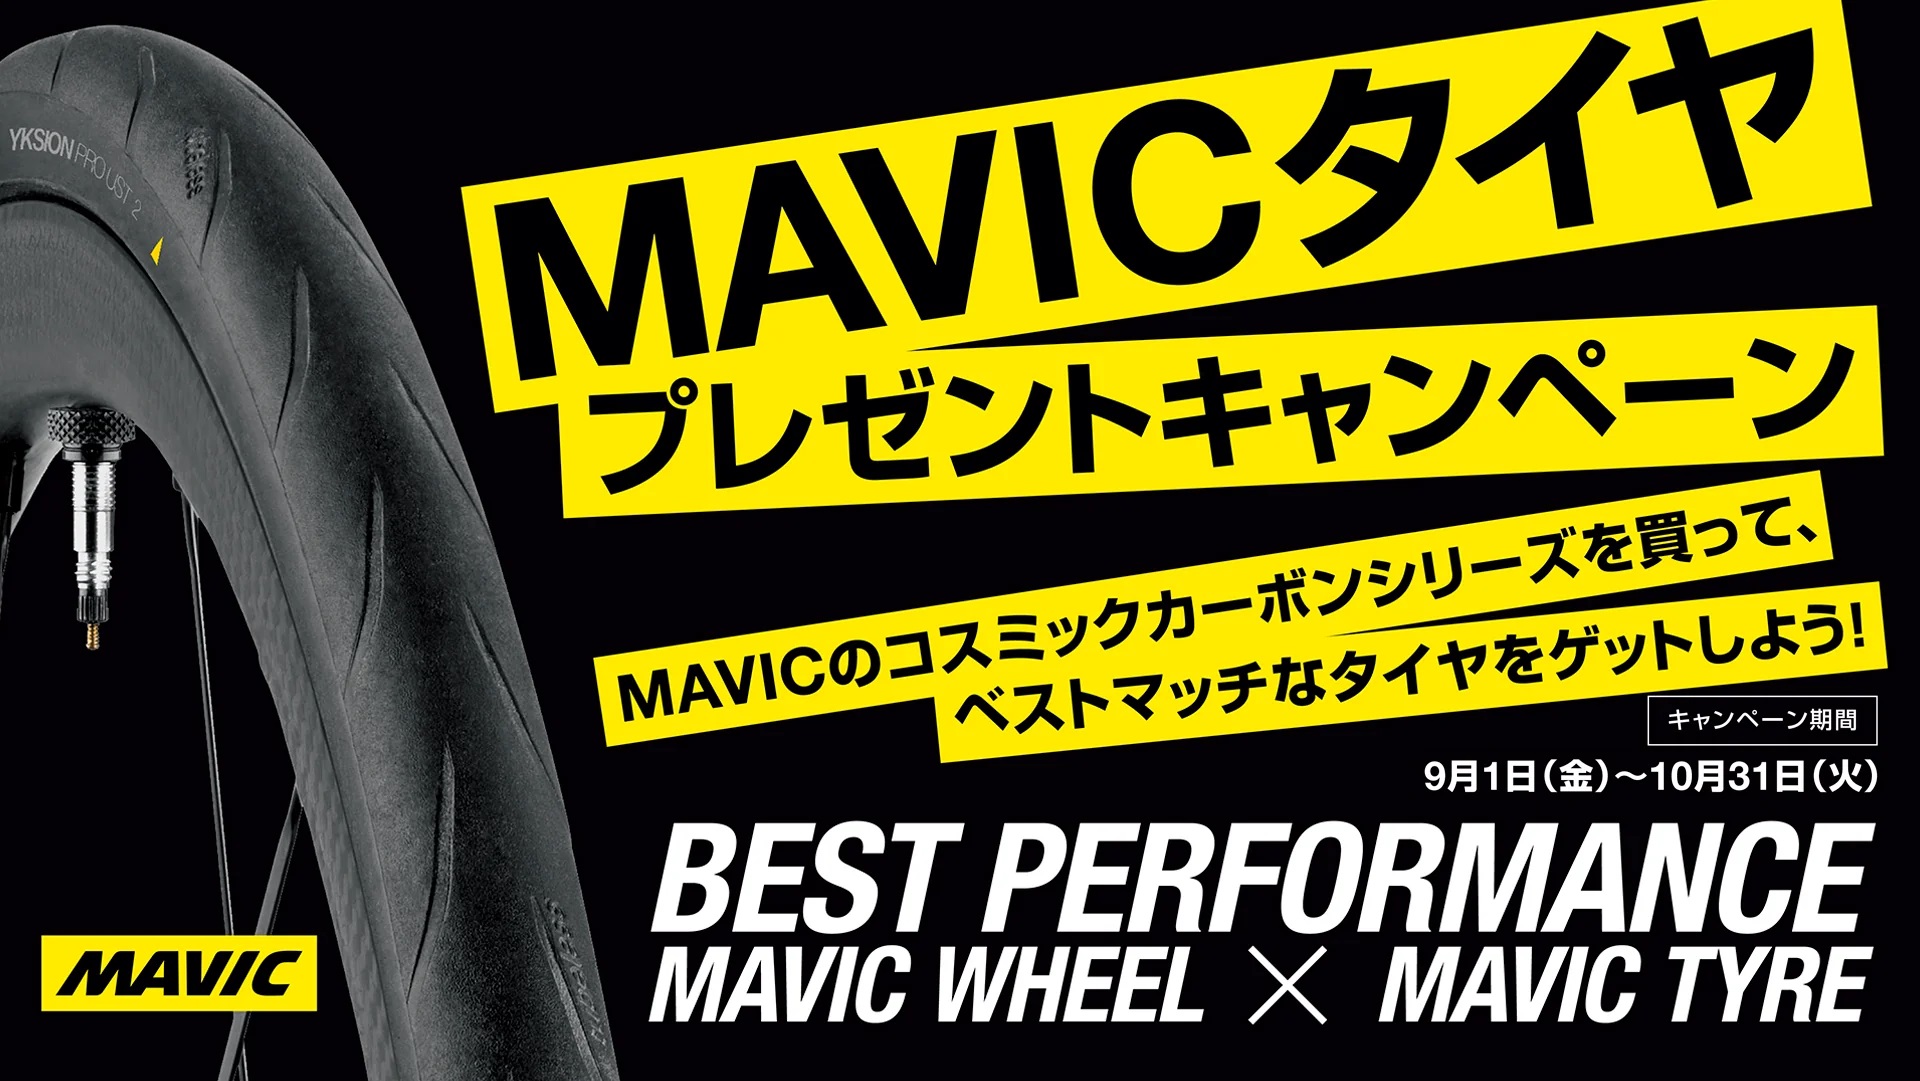 キャンペーン!!】MAVICのホイールを買うと・・・!?!? | 川崎で自転車を ...